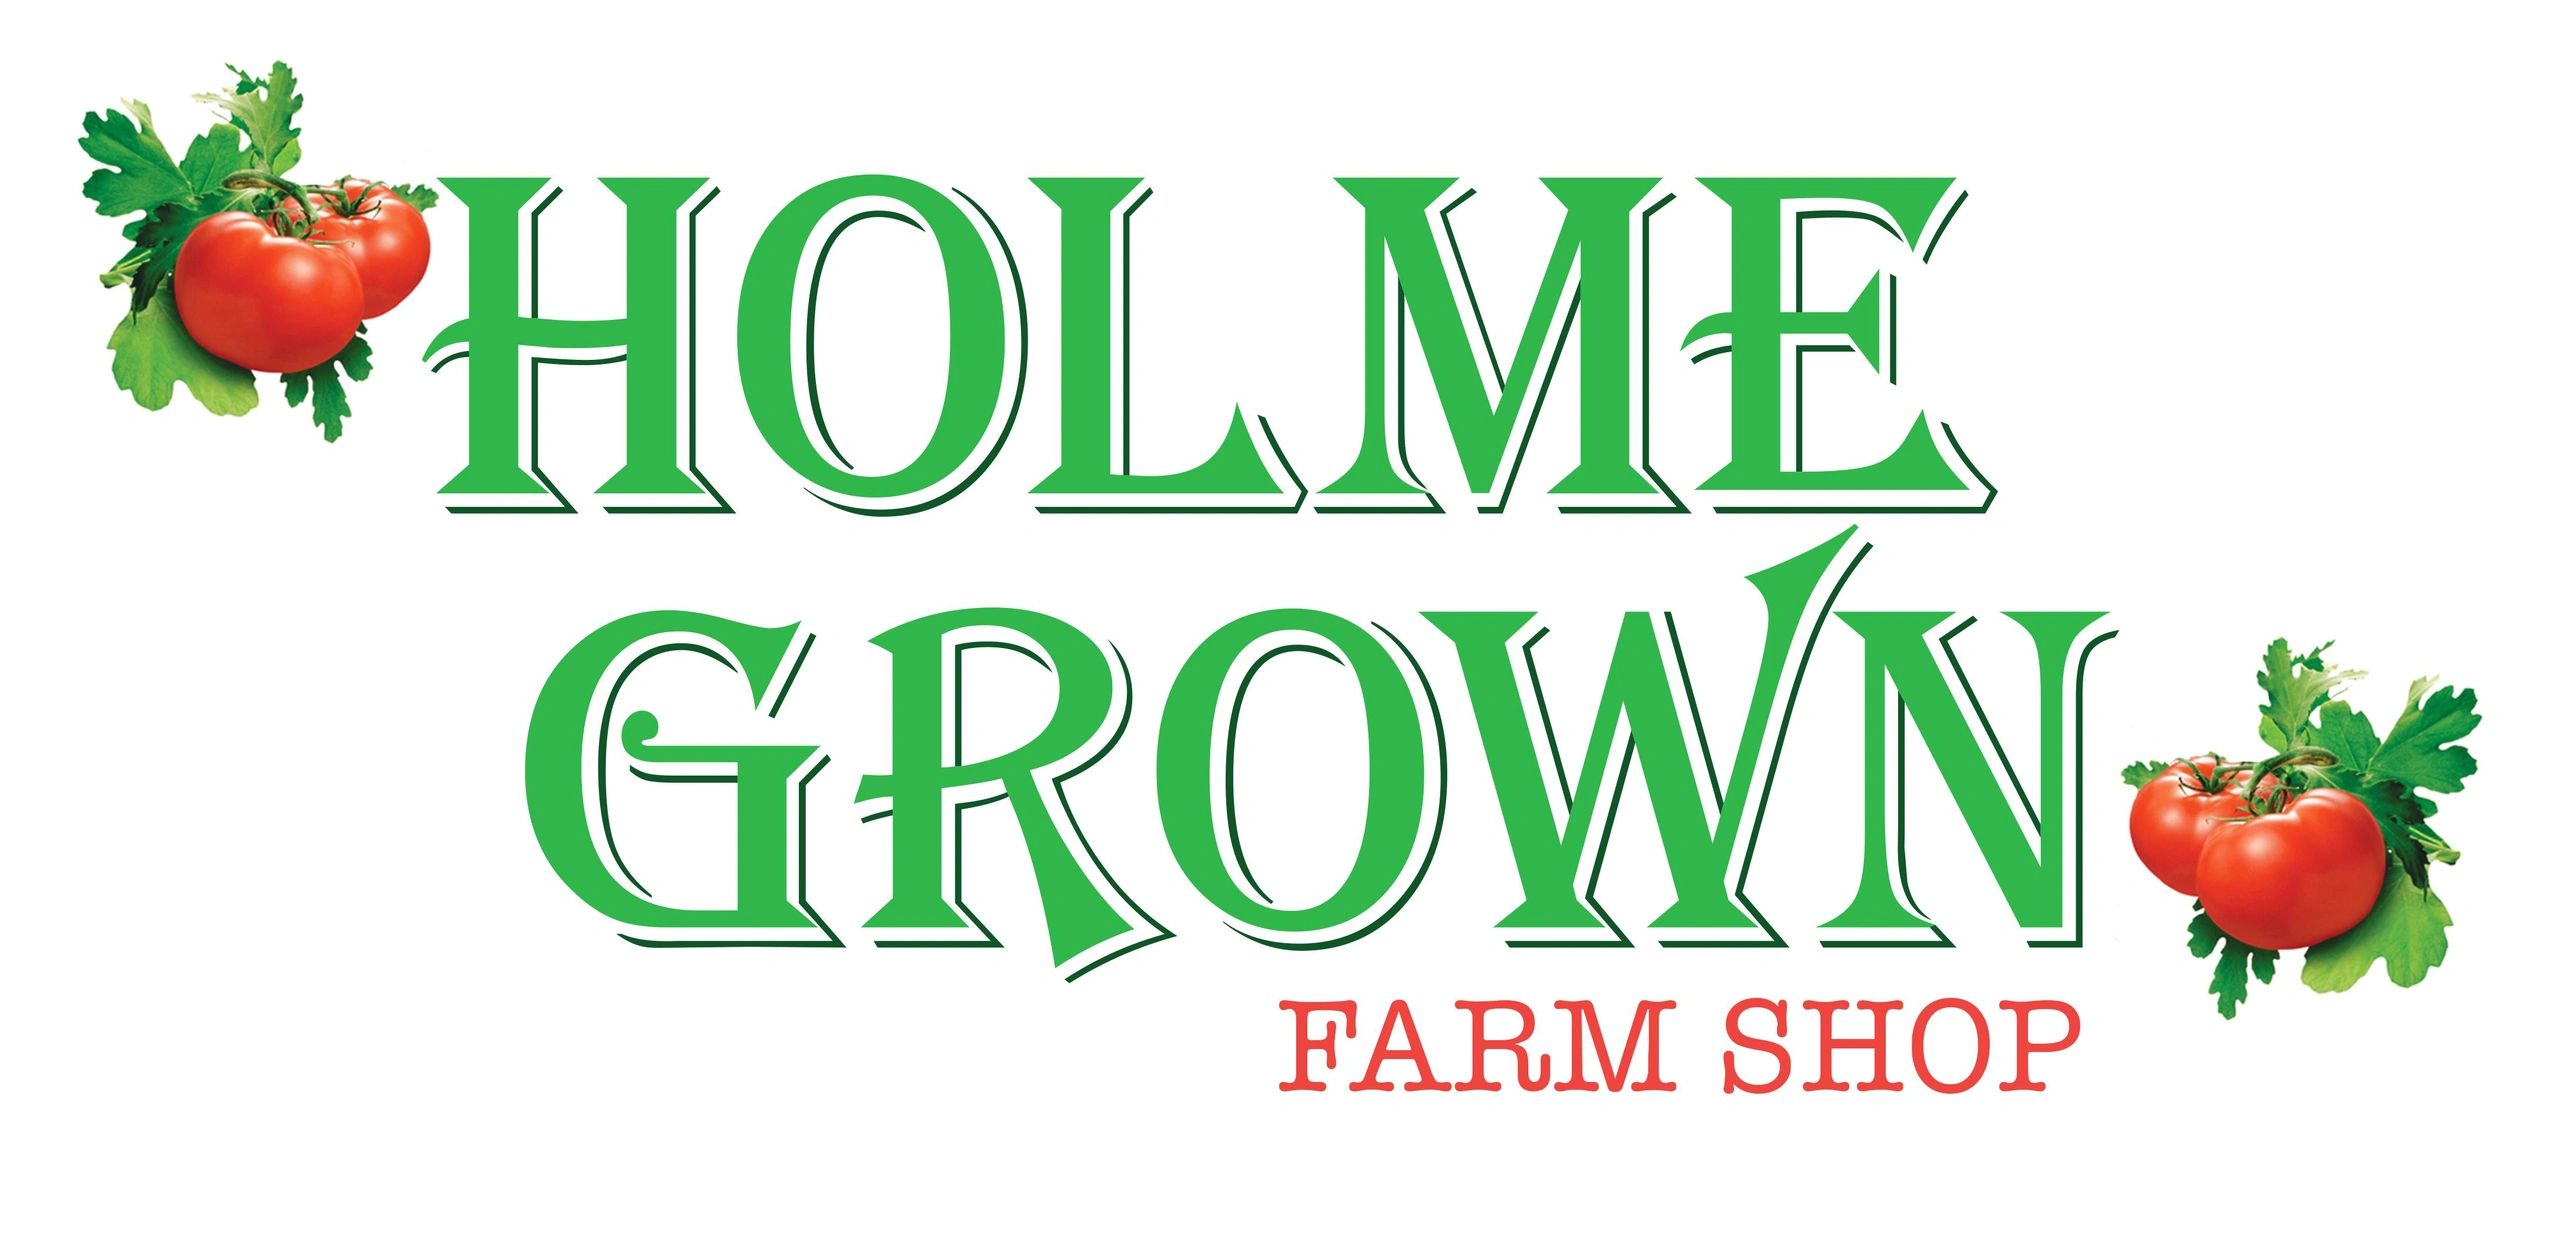 Holme Grown - Farm Shop